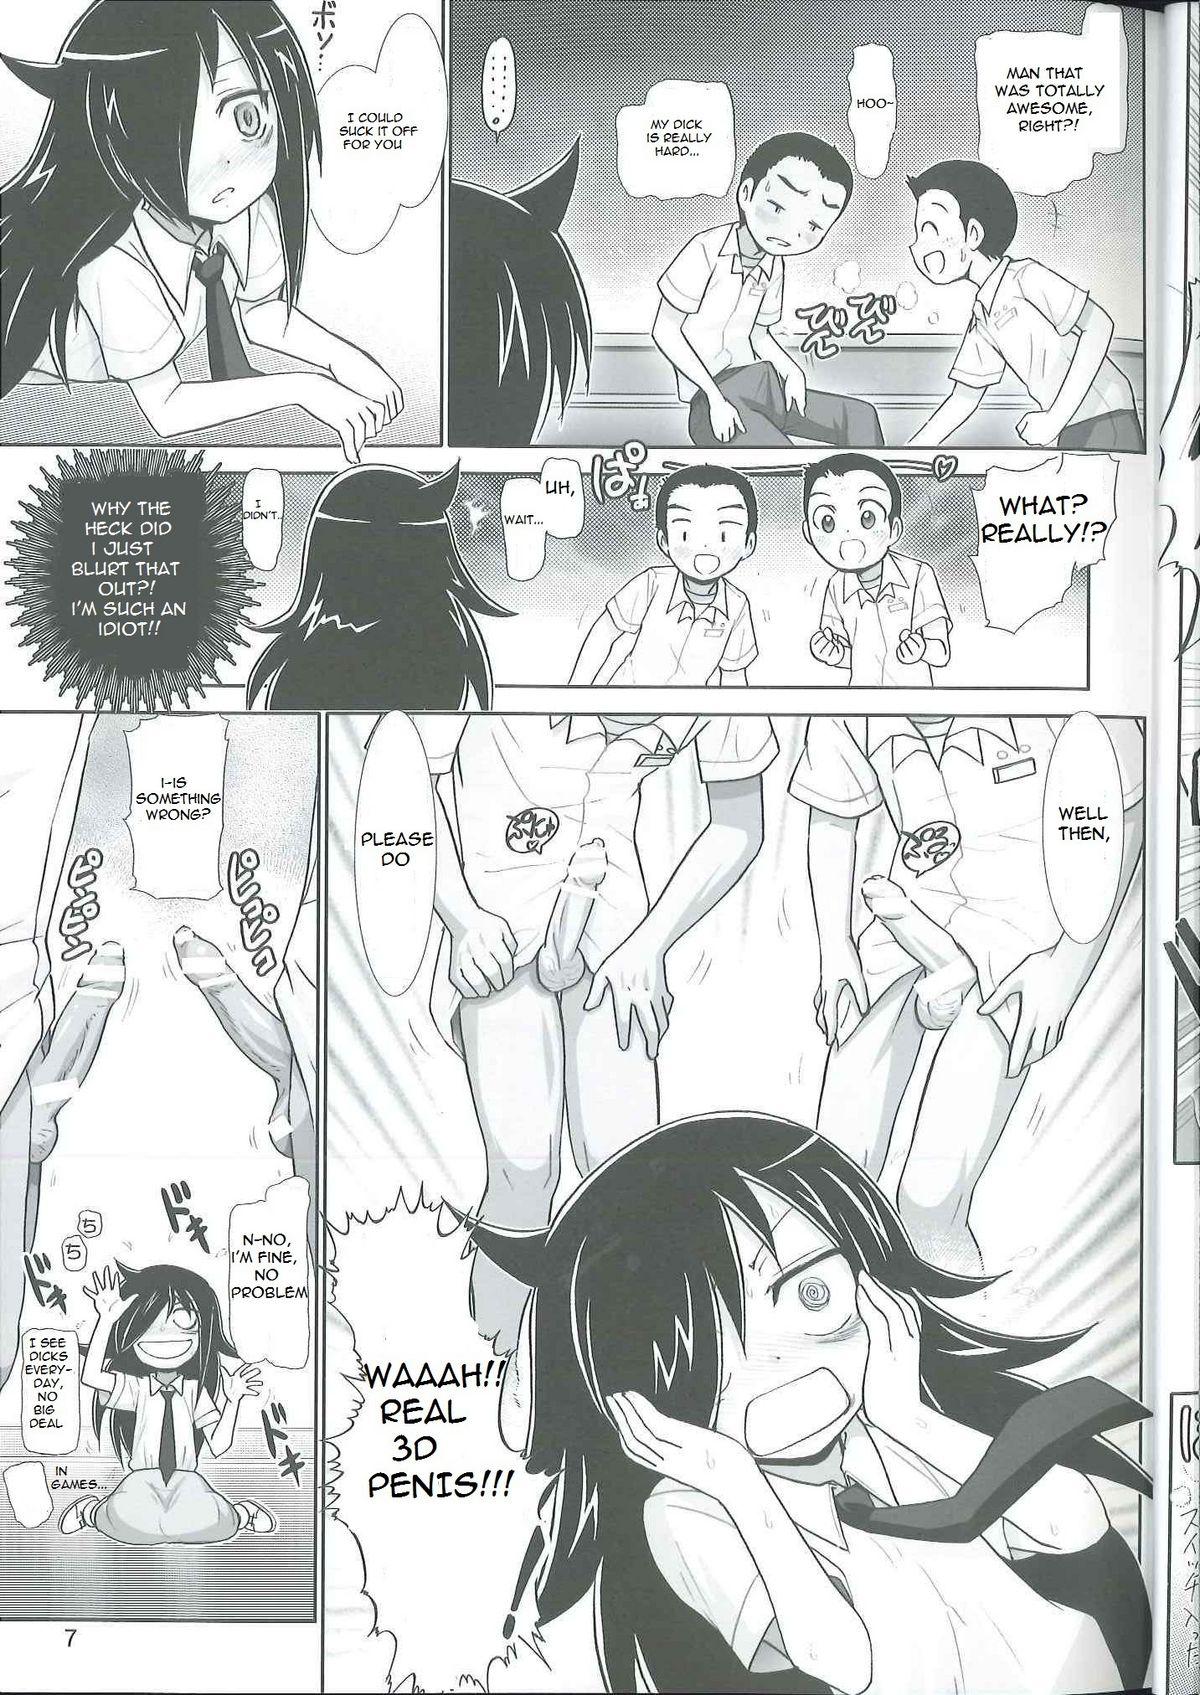 Titten Watashi ga H shite Nani ga Warui! - Its not my fault that im not popular Boys - Page 6